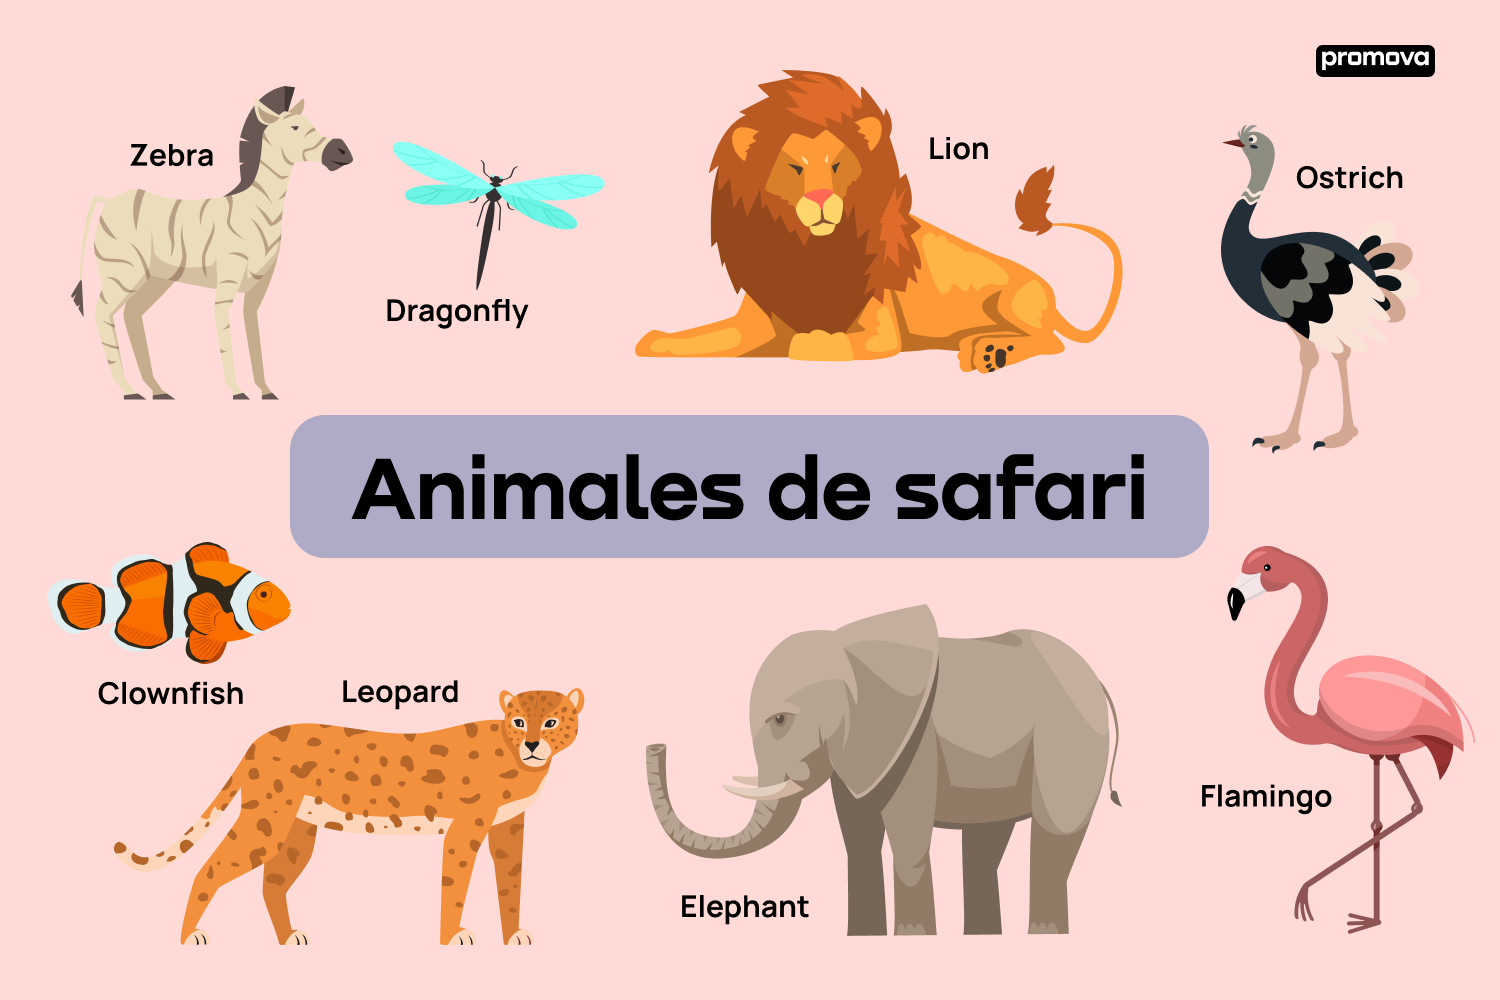 Aprende sobre la fauna del safari con este vocabulario esencial